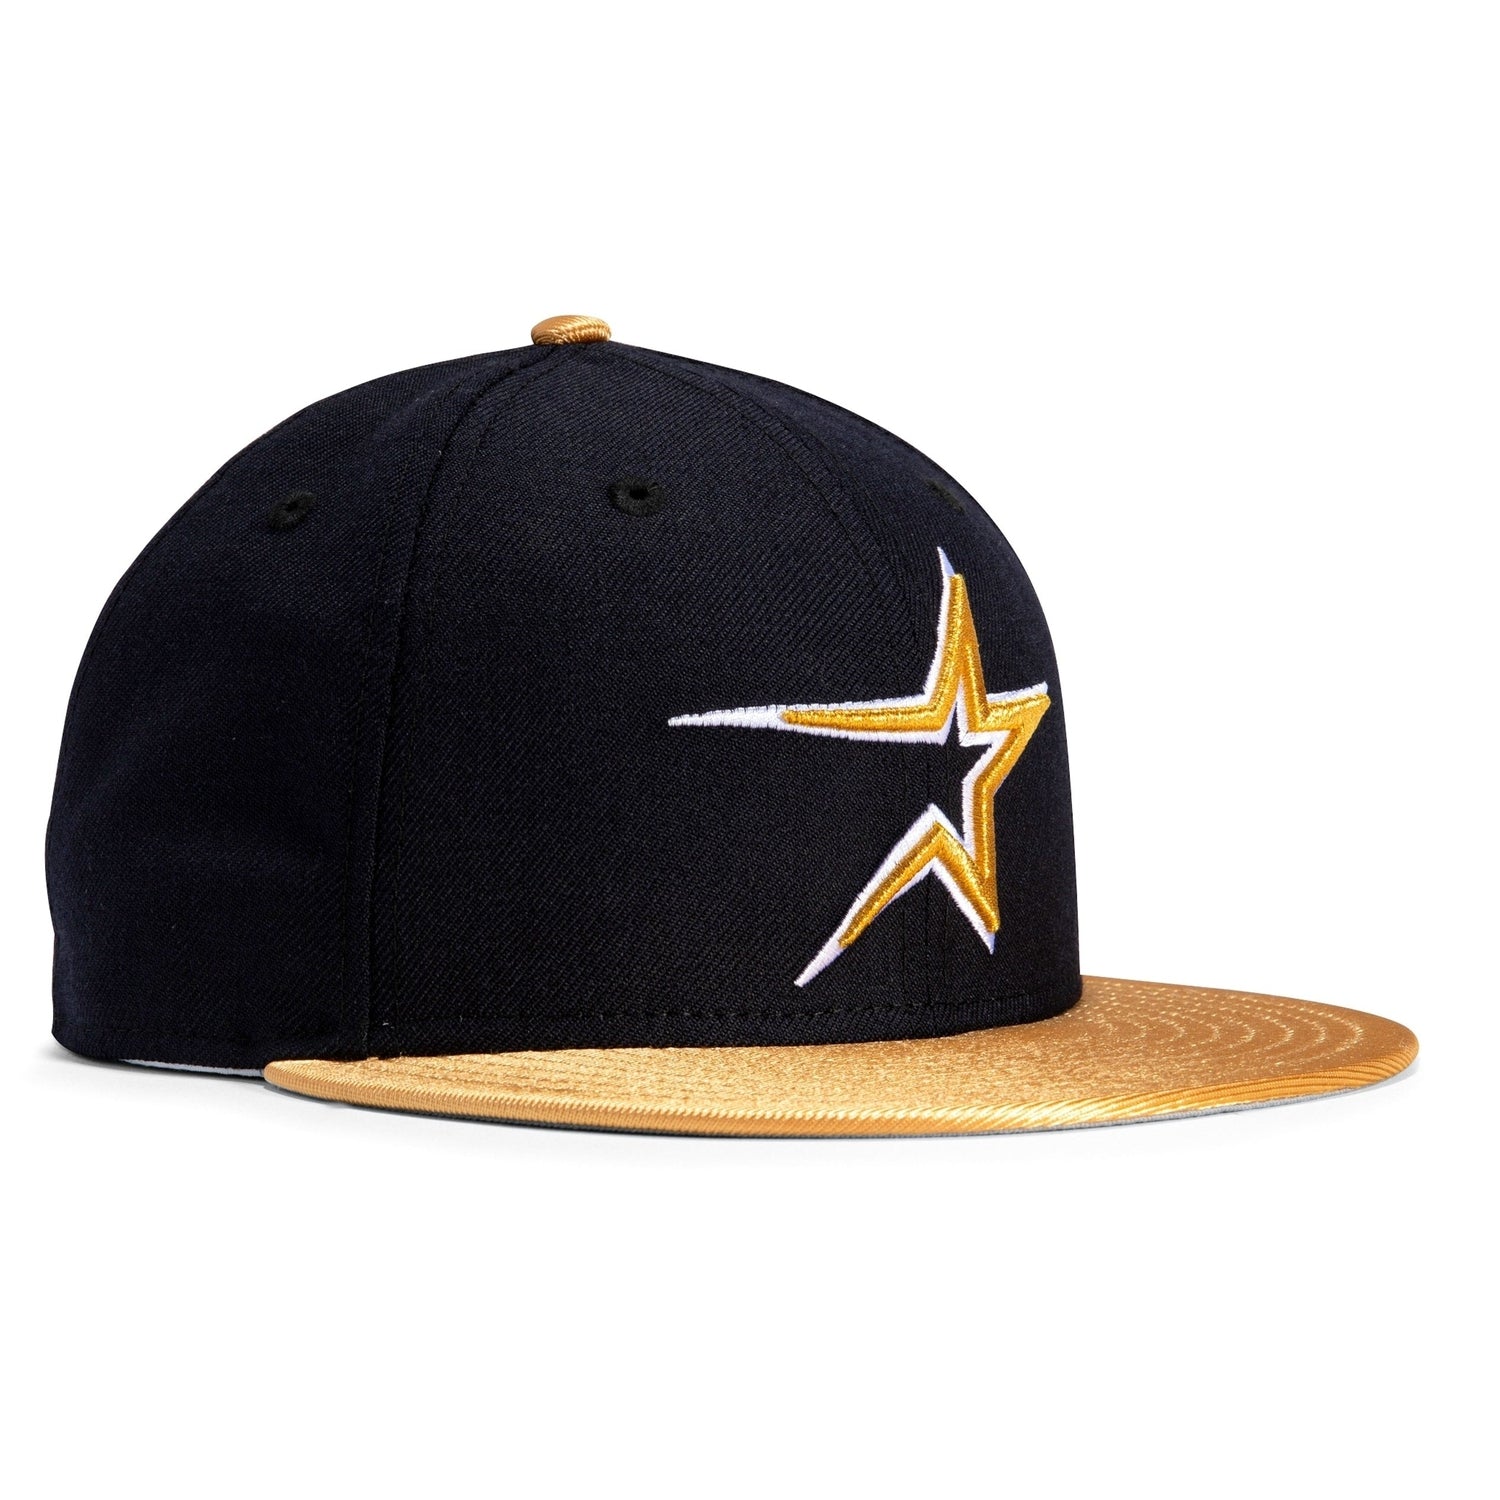 New Era 59FIFTY Retro On-Field Houston Astros Game Hat - Navy, Metallic Gold Navy/Metallic Gold / 7